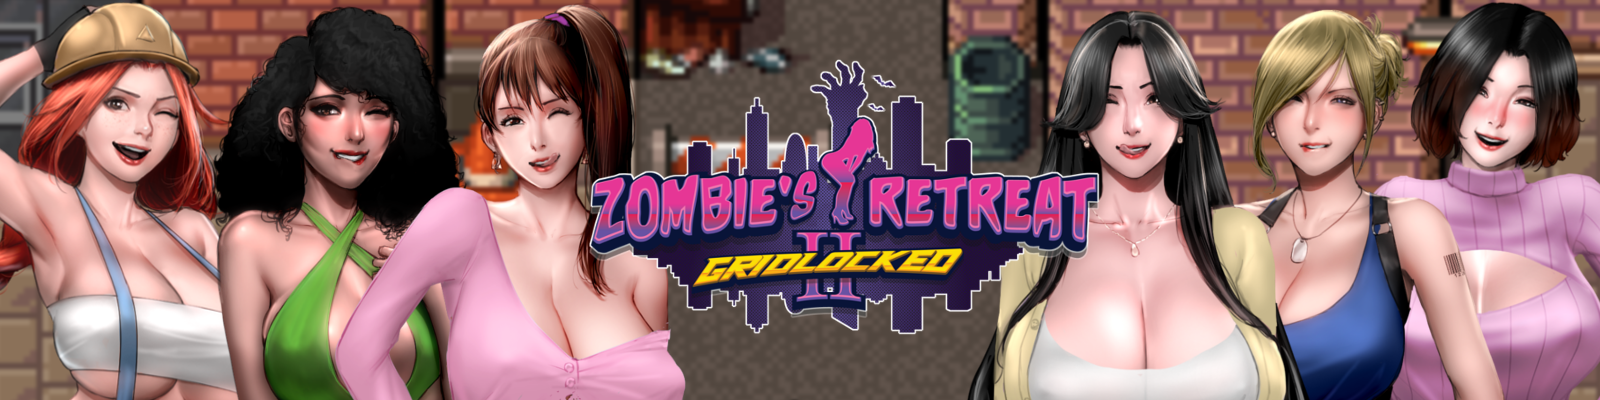 Zombie's Retreat 2